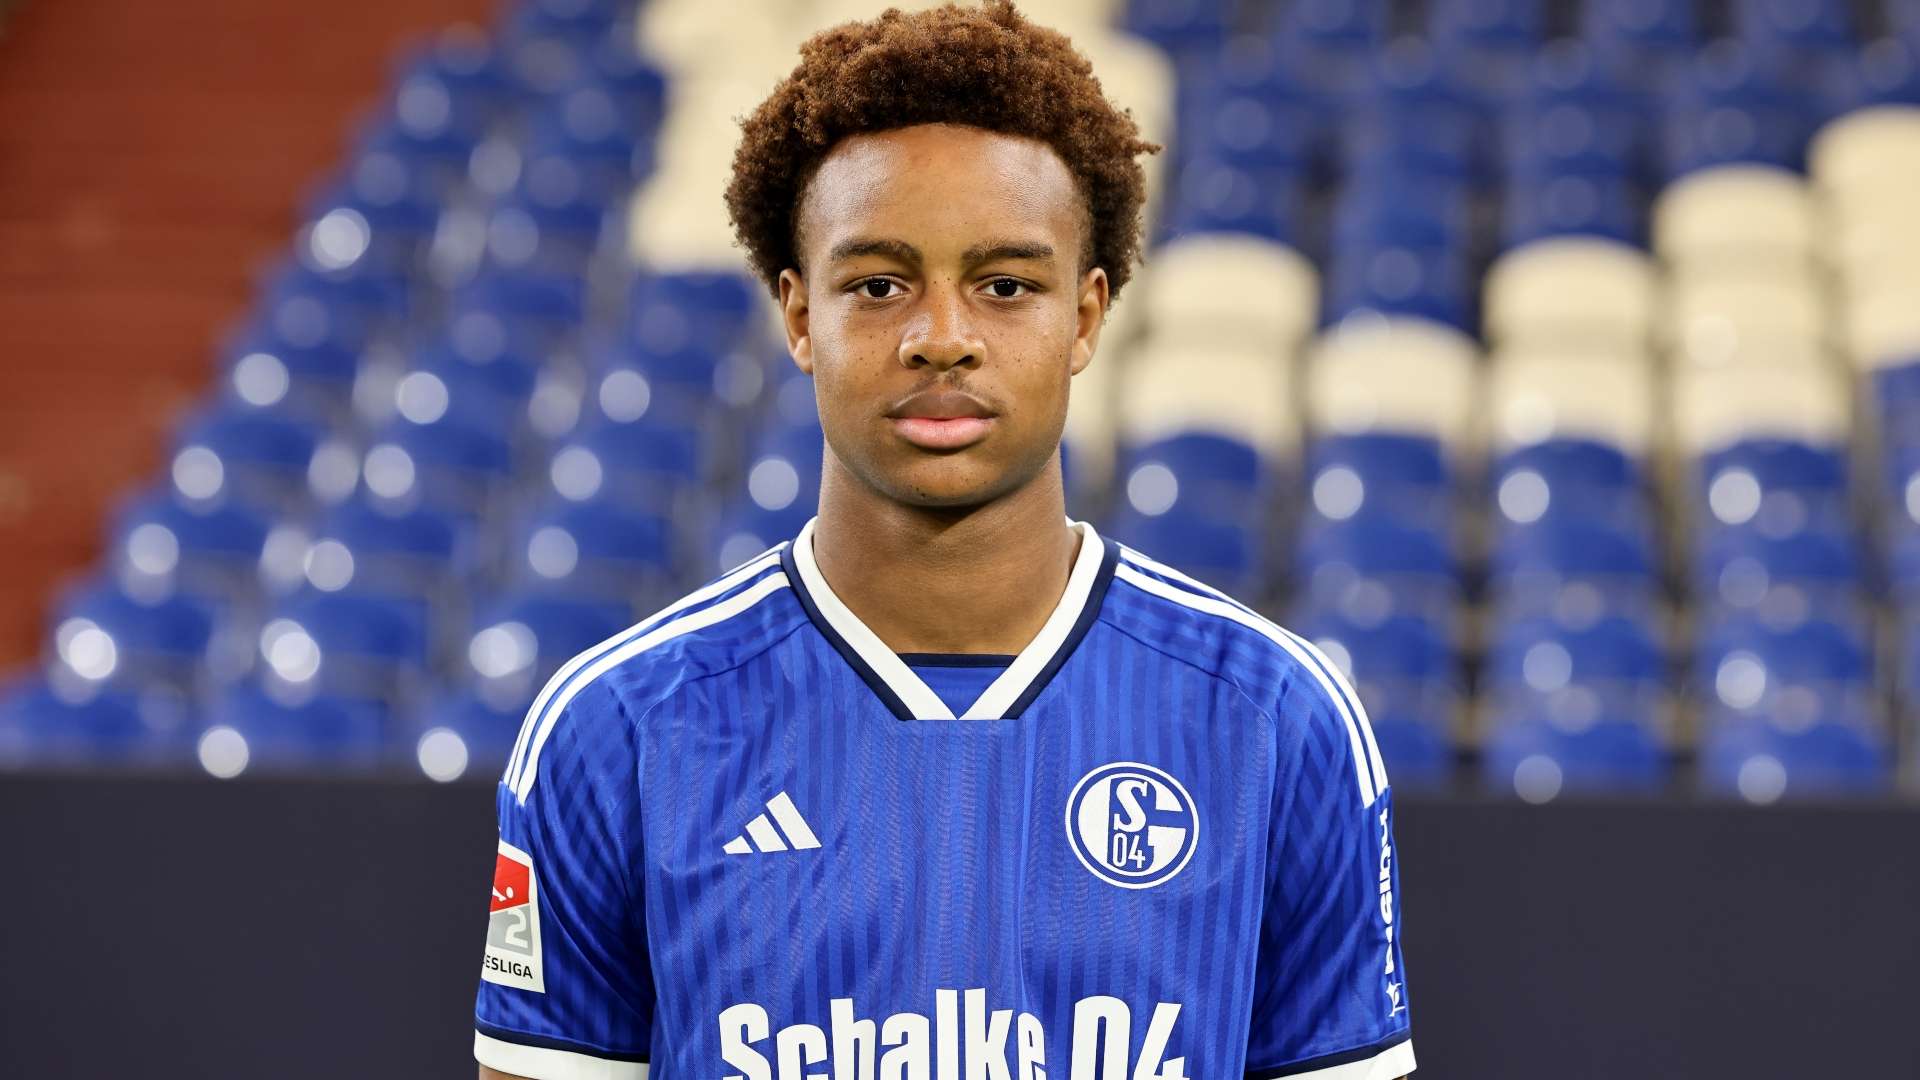 Ouedraogo Schalke